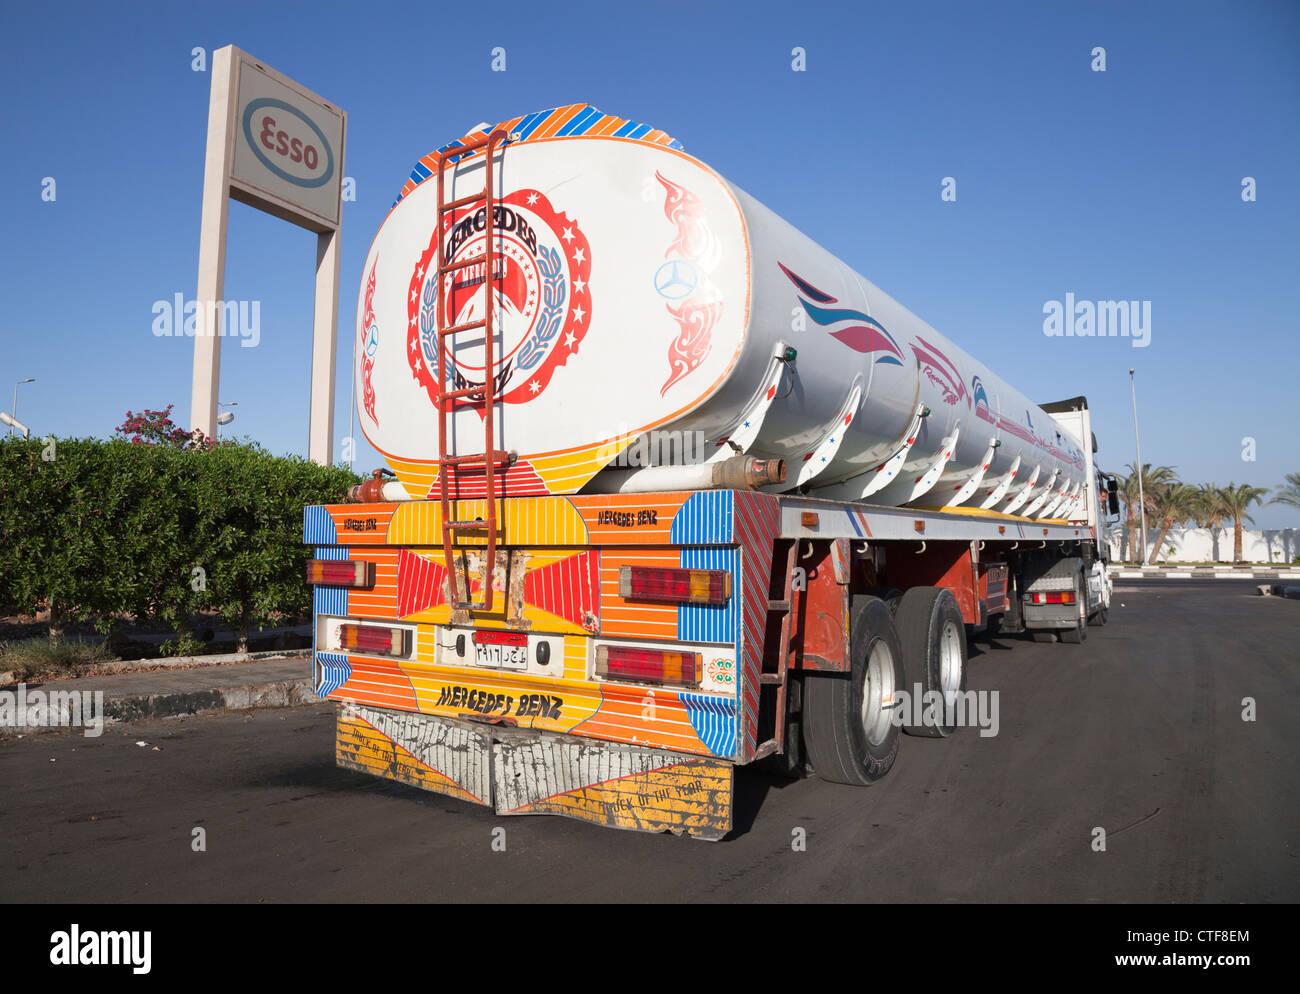 Mercedes égyptien camion-citerne de carburant chez Esso station dahab Egypte Banque D'Images